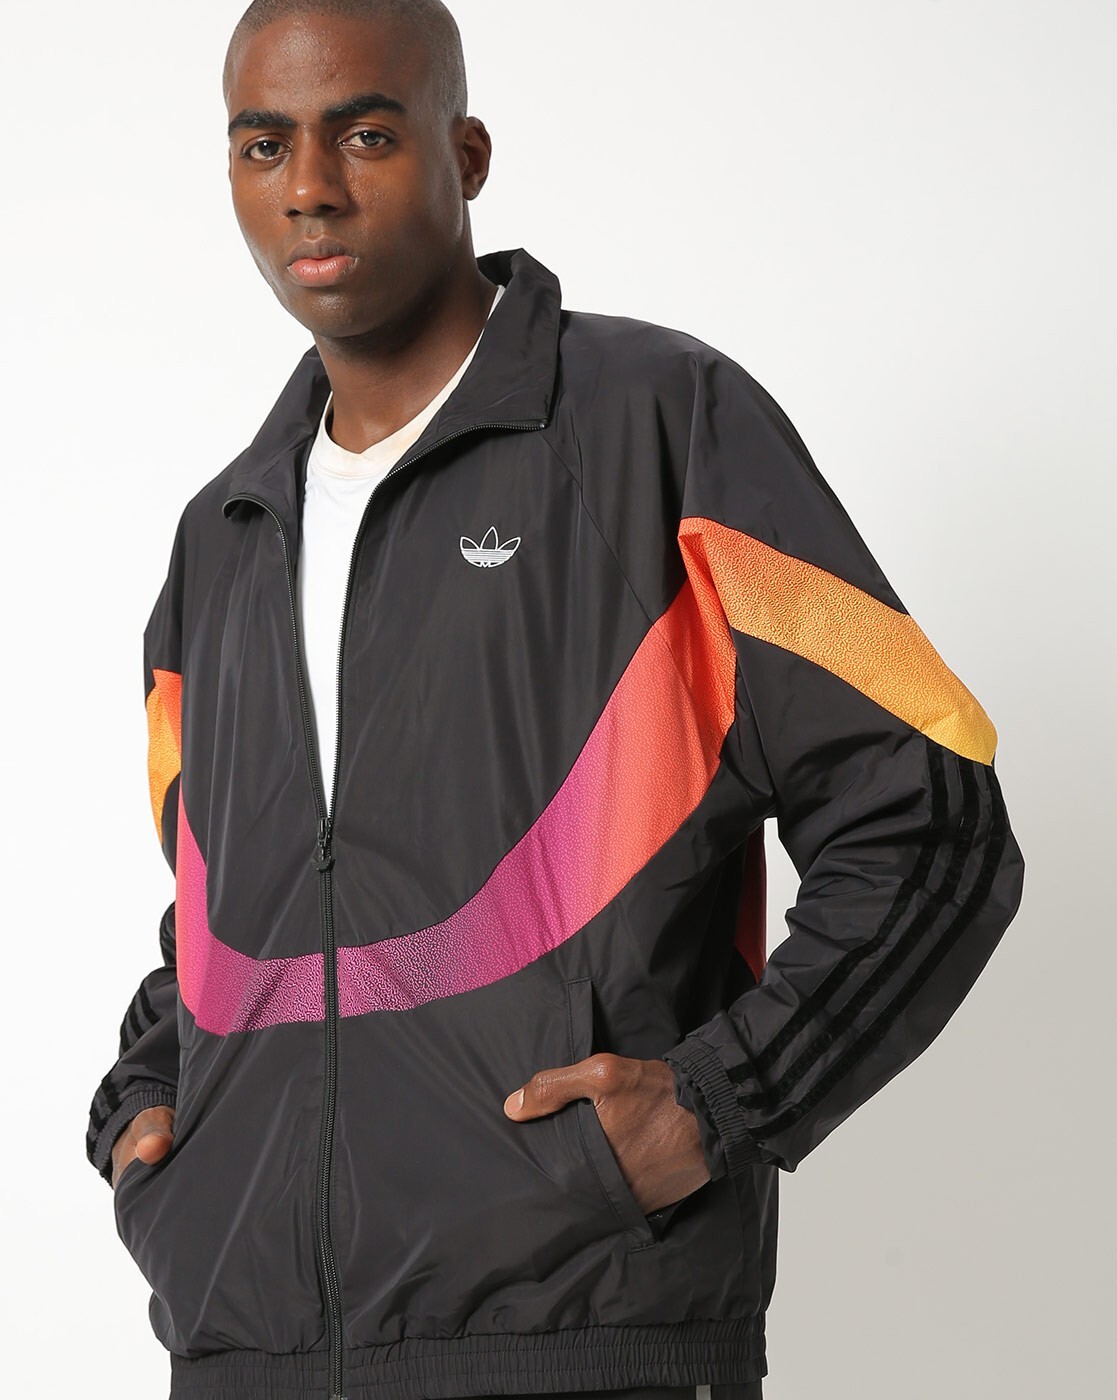 Buy Jackets & Coats for Men Adidas Originals Online | Ajio.com